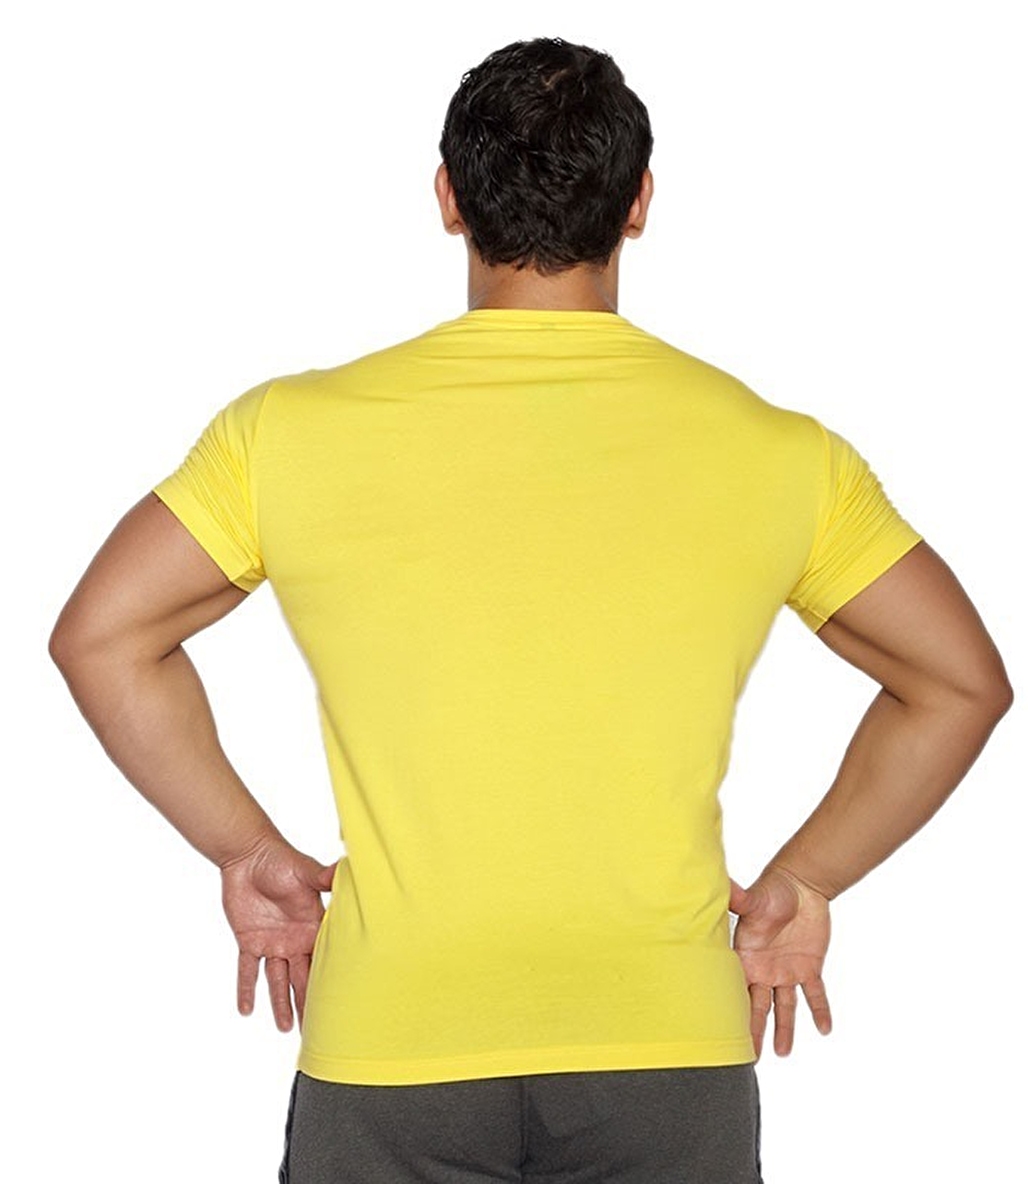 MuscleCloth Basic T-Shirt Sarı